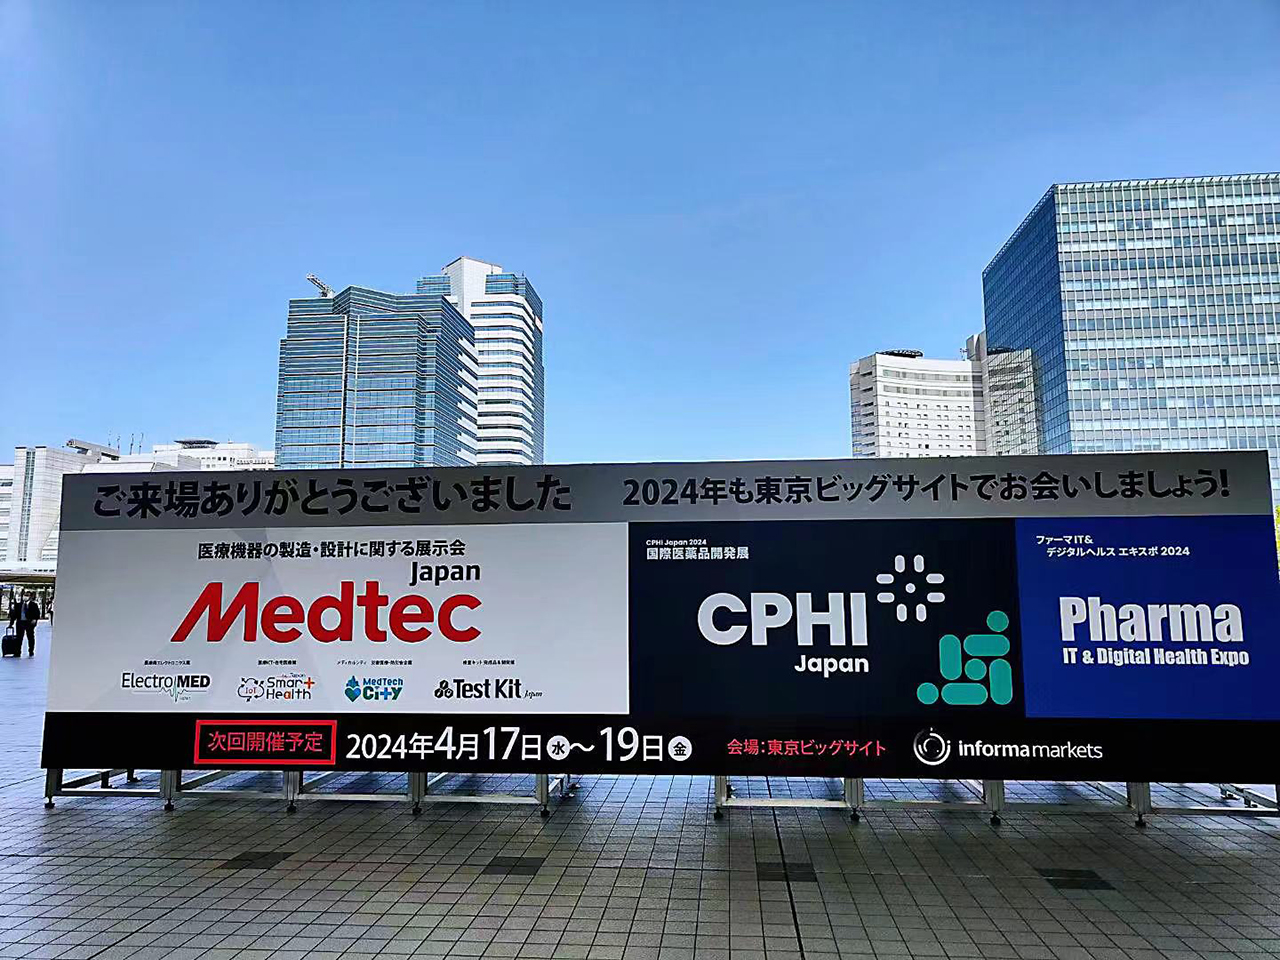 CPHI JAPAN 2023 (Apr.17-Apr.19, 2023)